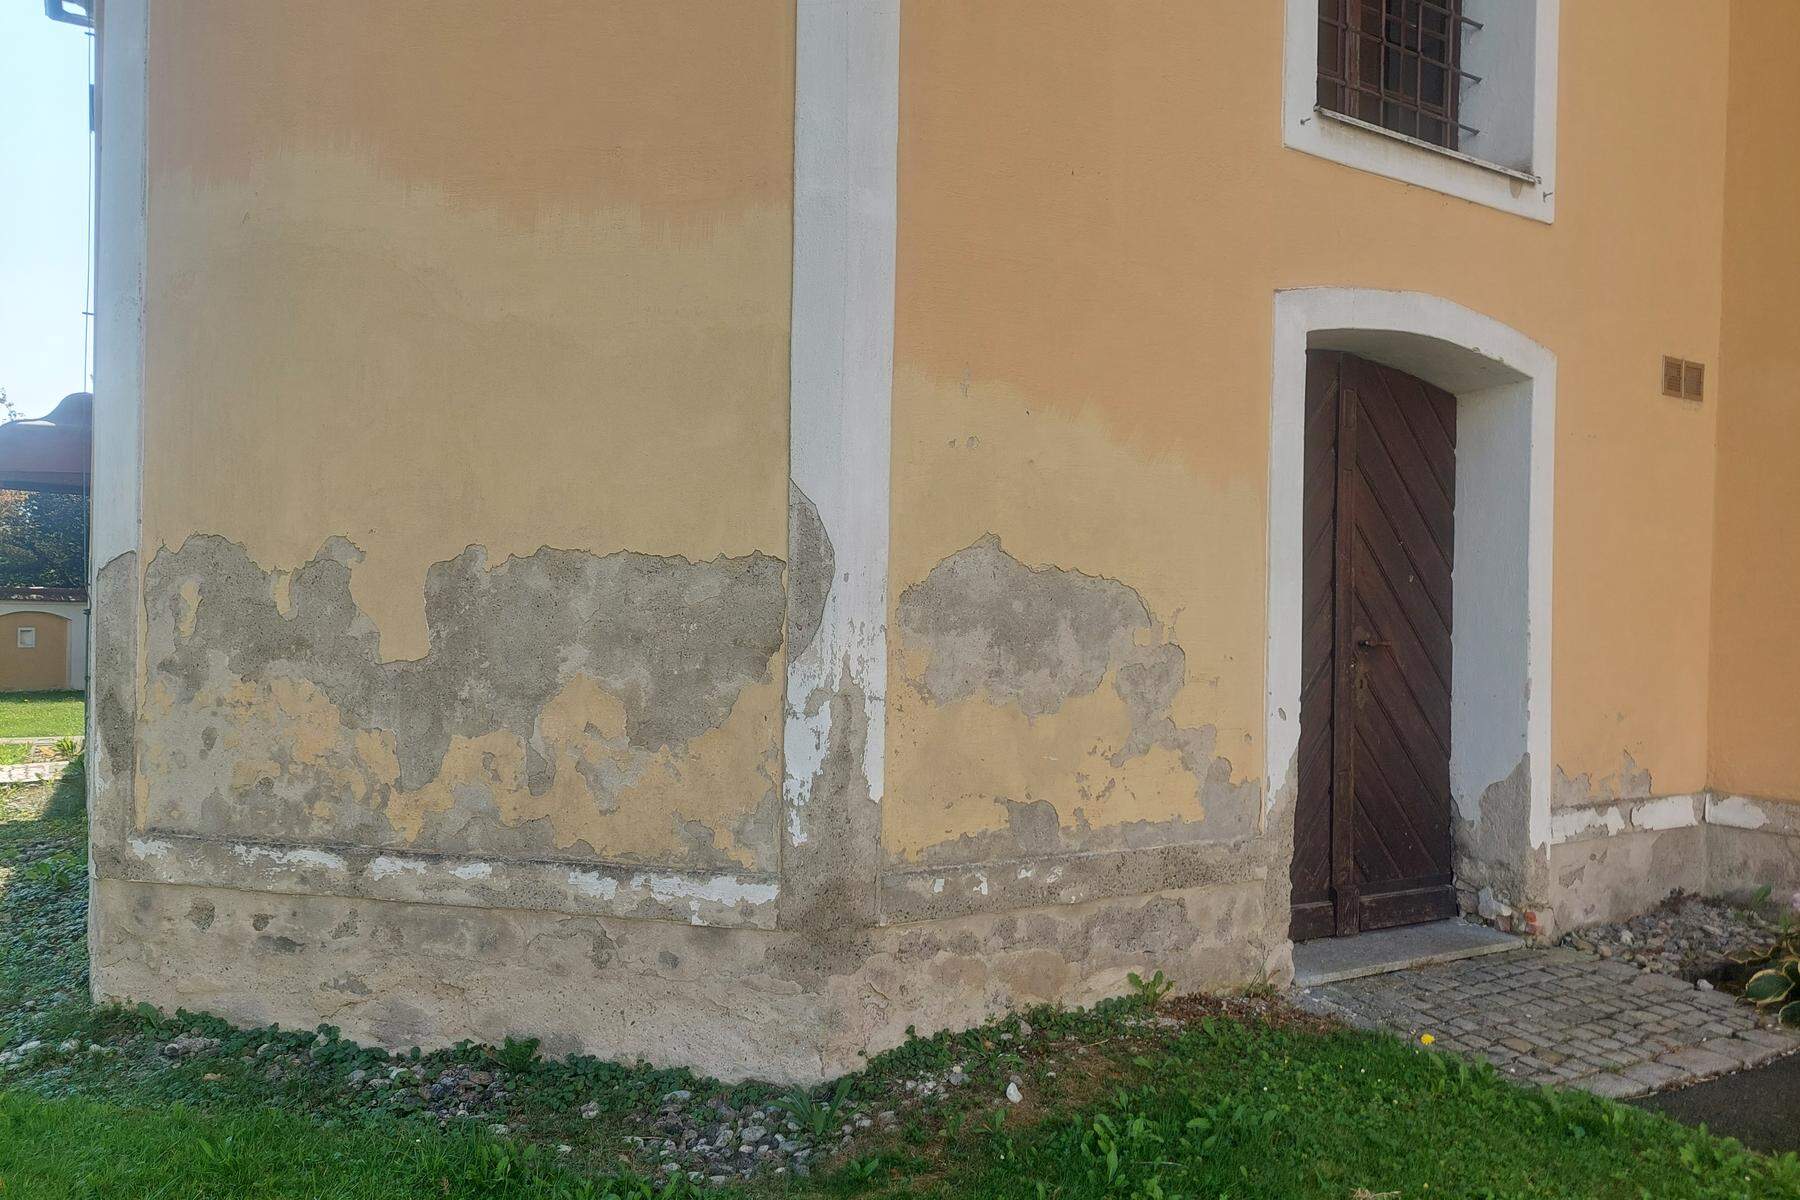 Finanzielle Schieflage im Ort: Söchauer Kirchenrenovierung muss abgesagt werden